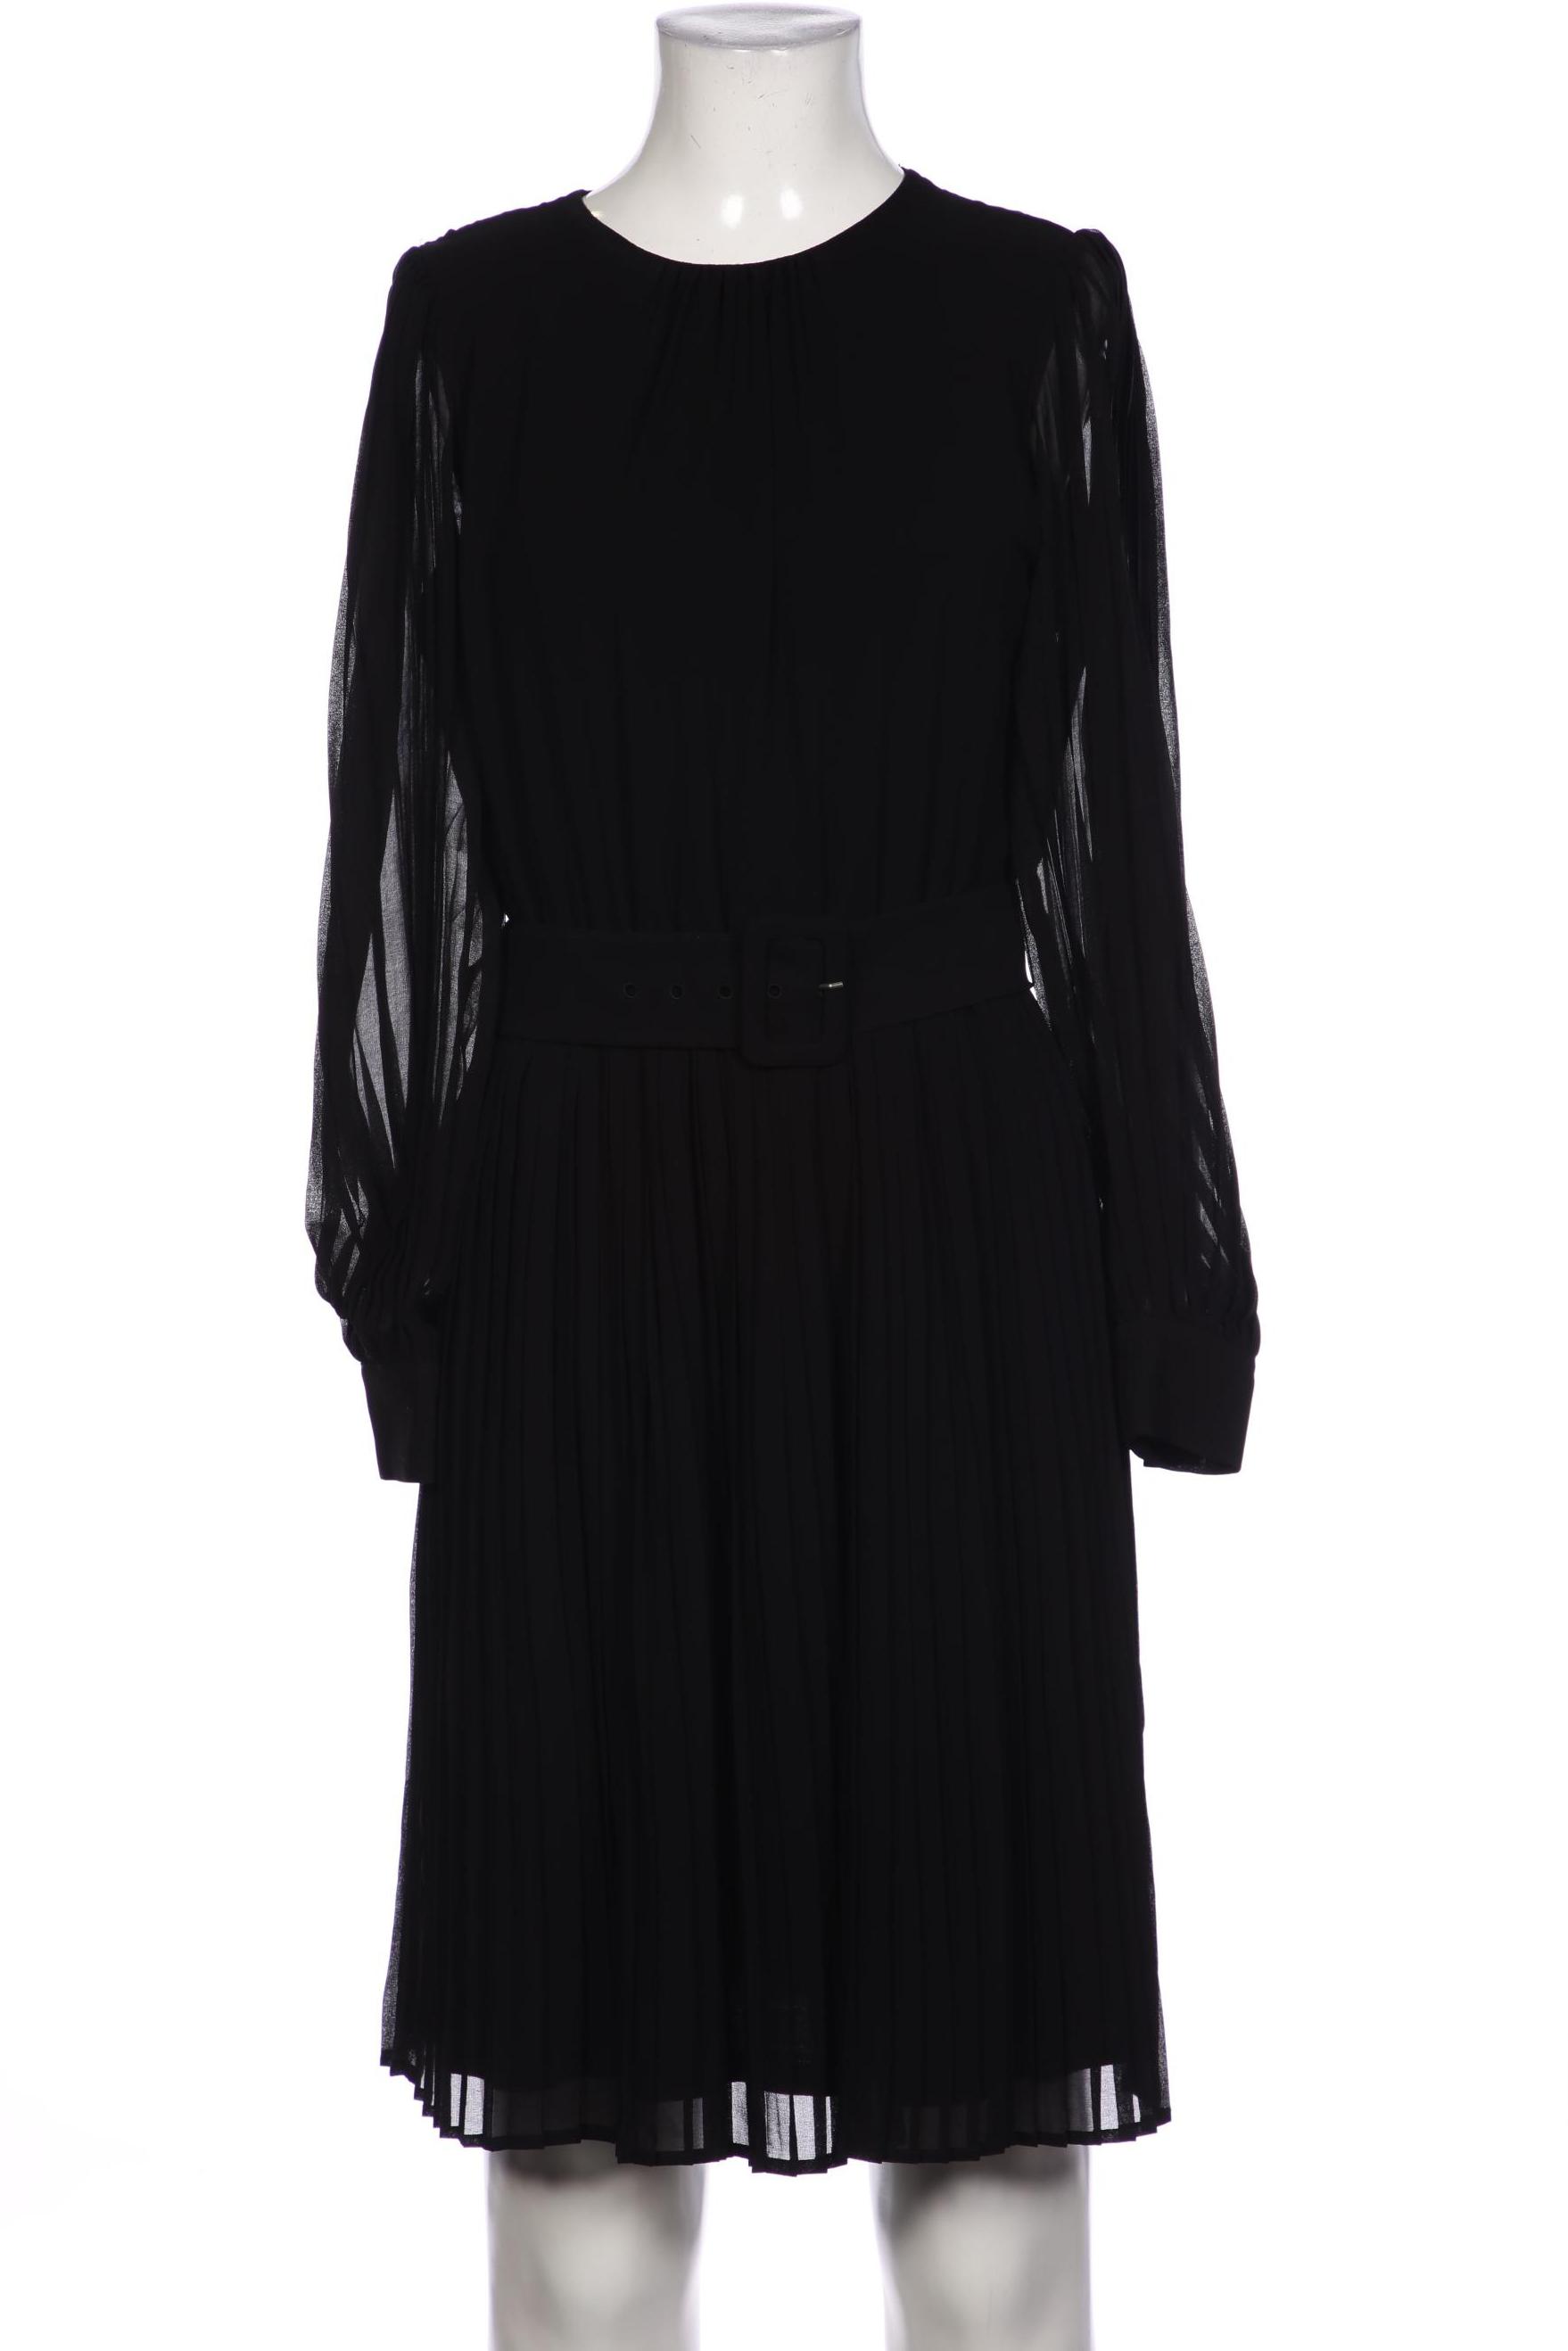 Hallhuber Damen Kleid, schwarz von Hallhuber